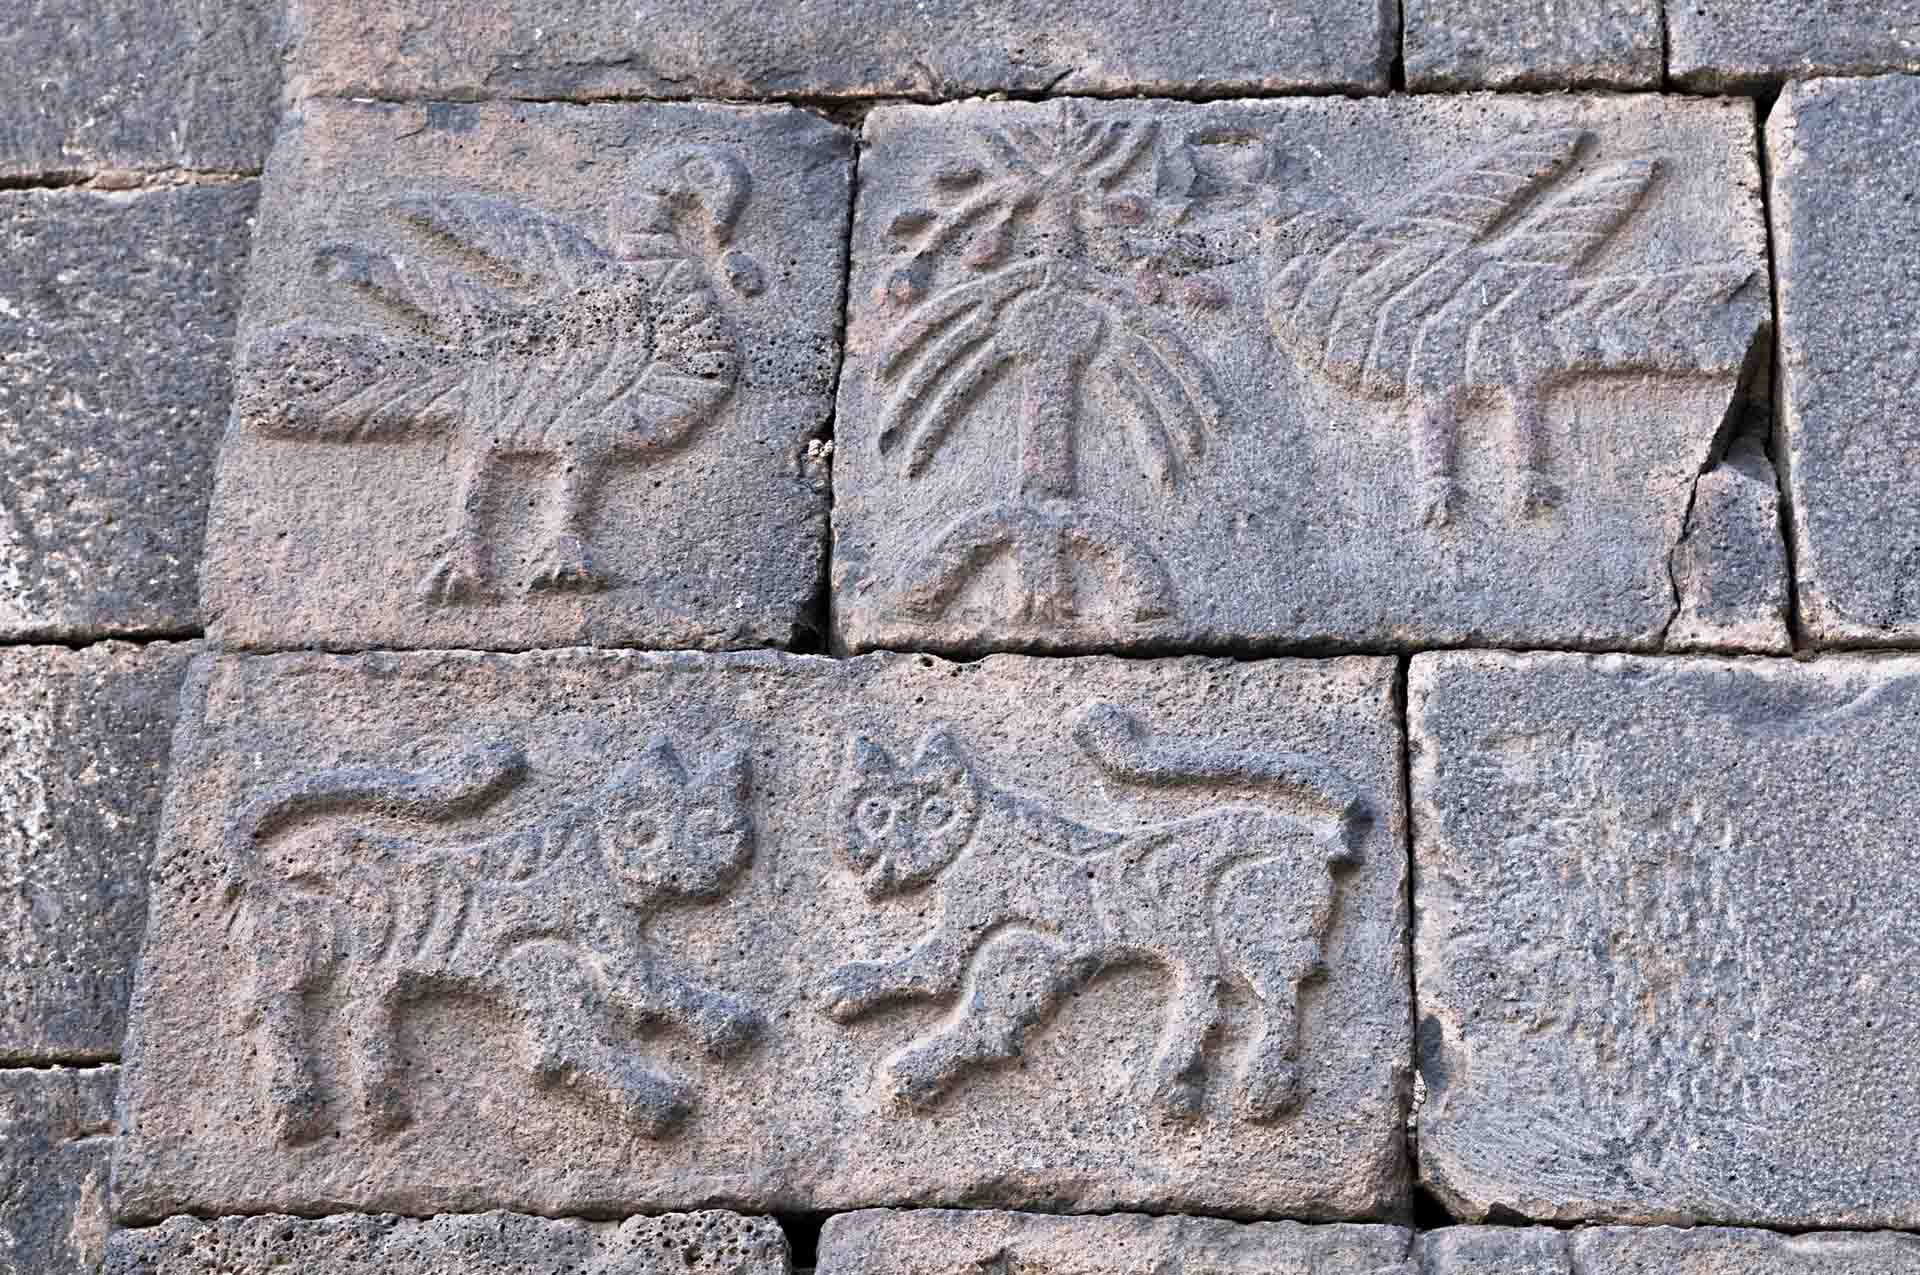 Chiêm ngưỡng vẻ kỳ vĩ của Diyarbakir - Tường thành dài thứ 2 thế giới bị ảnh hưởng bởi động đất tại Thổ Nhĩ Kỳ - Ảnh 13.